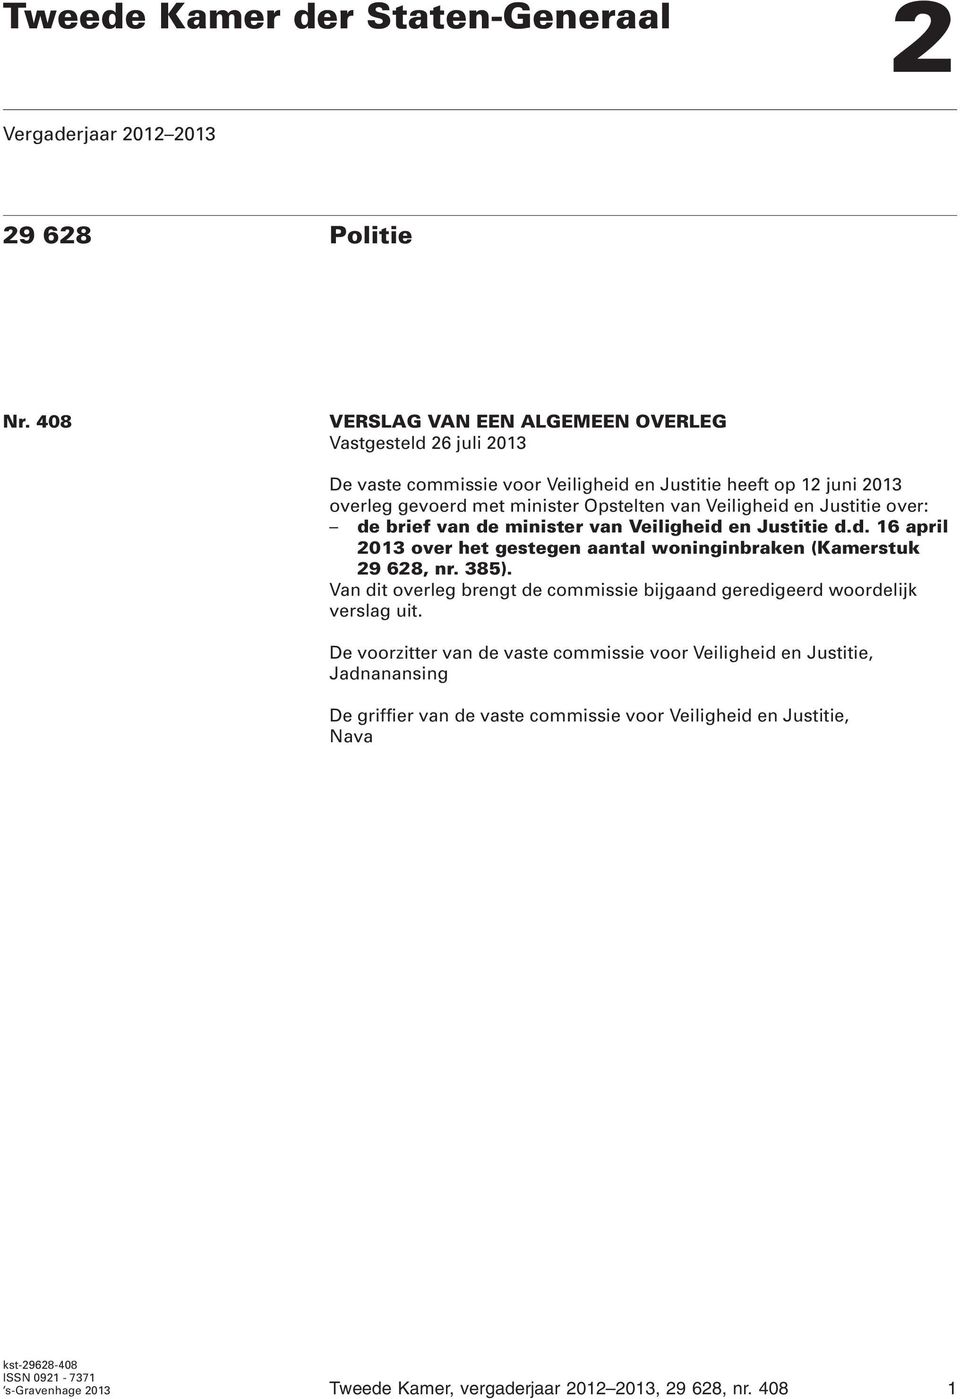 Justitie over: de brief van de minister van Veiligheid en Justitie d.d. 16 april 2013 over het gestegen aantal woninginbraken (Kamerstuk 29 628, nr. 385).